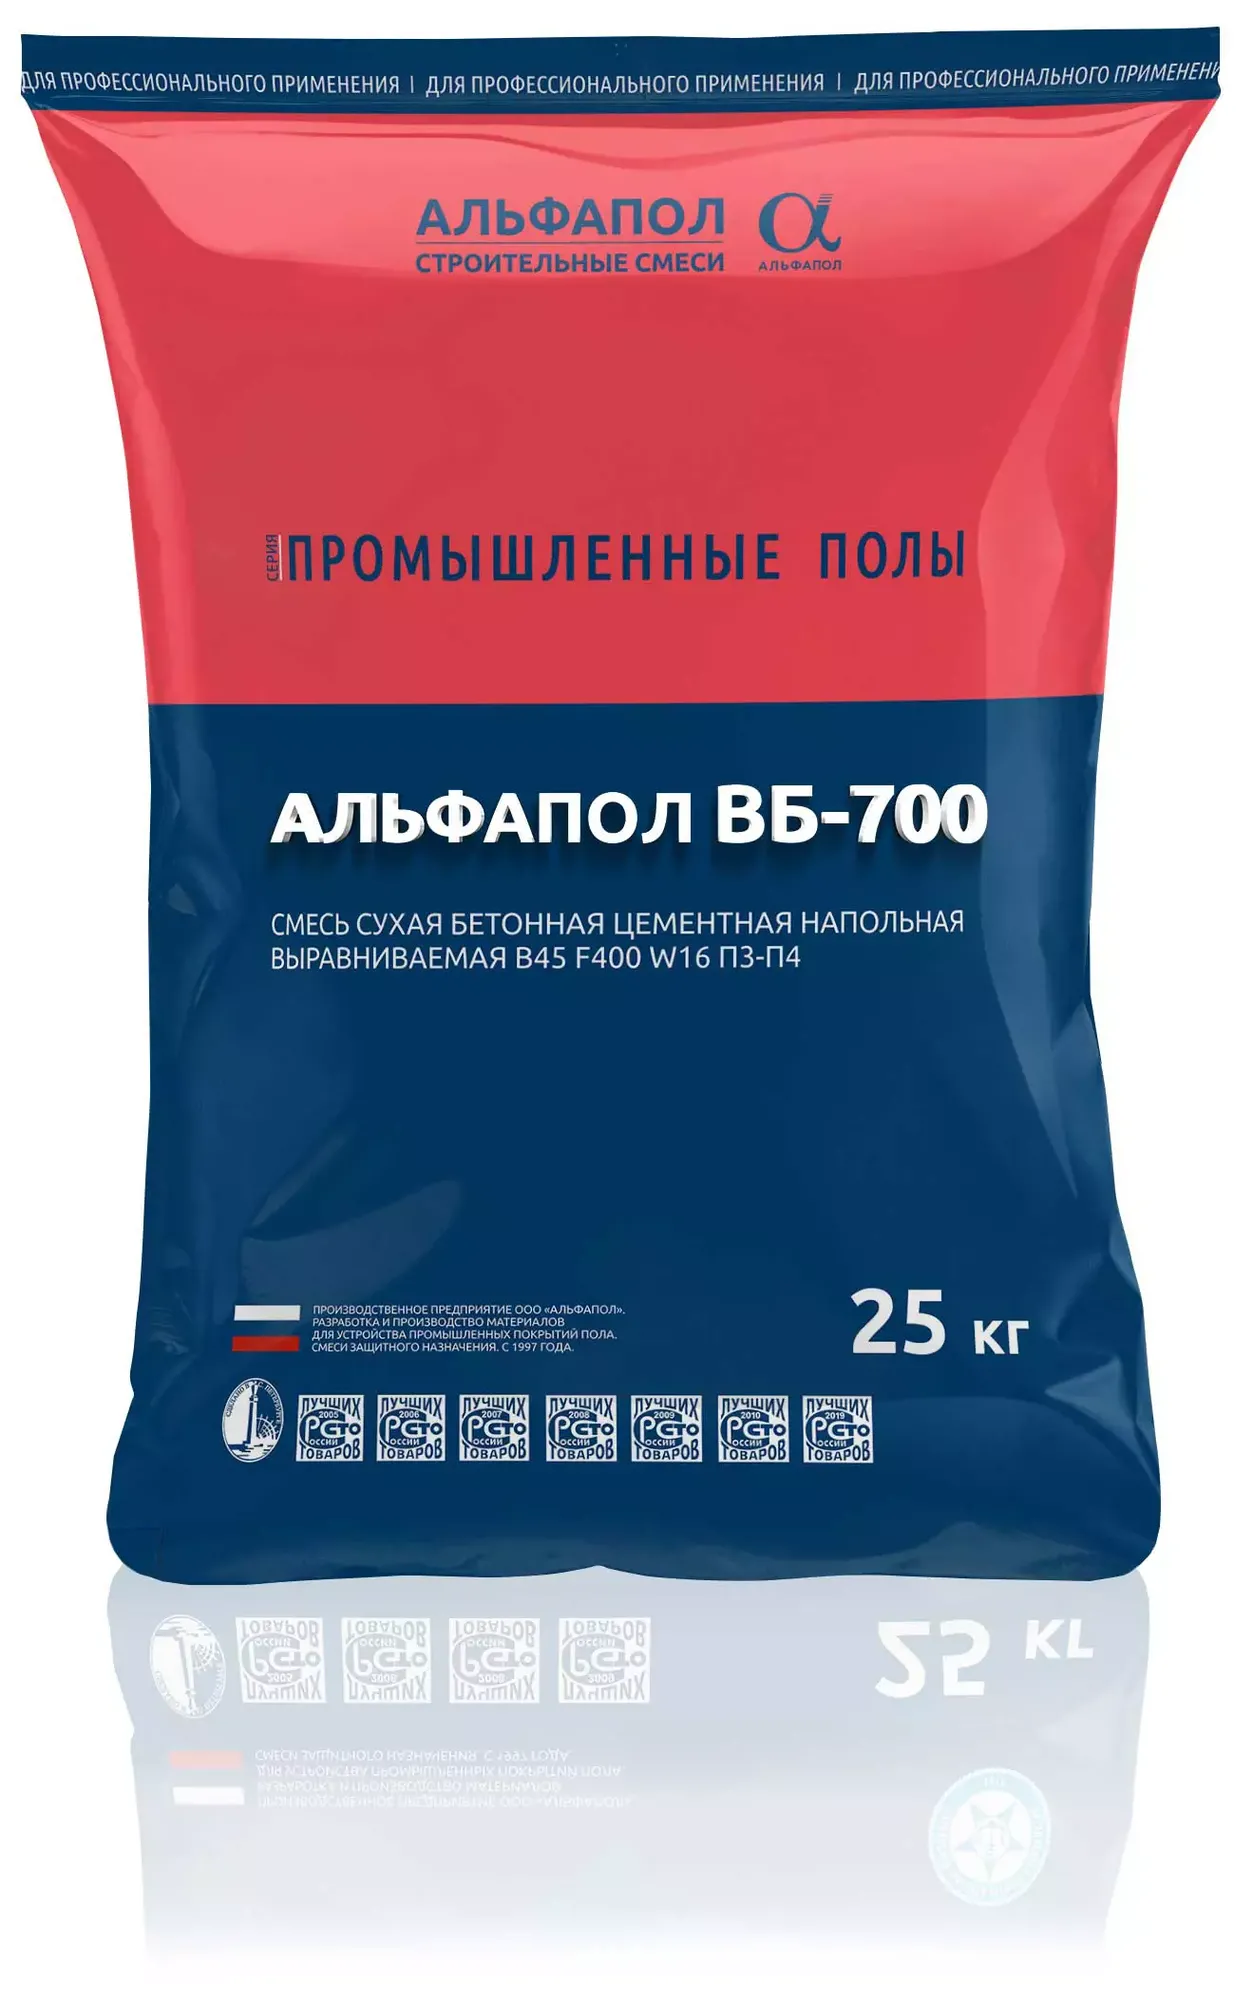 АЛЬФАПОЛ ВБ-700 износоустойчивый маслобензостойкий промышленный пол B45 W16